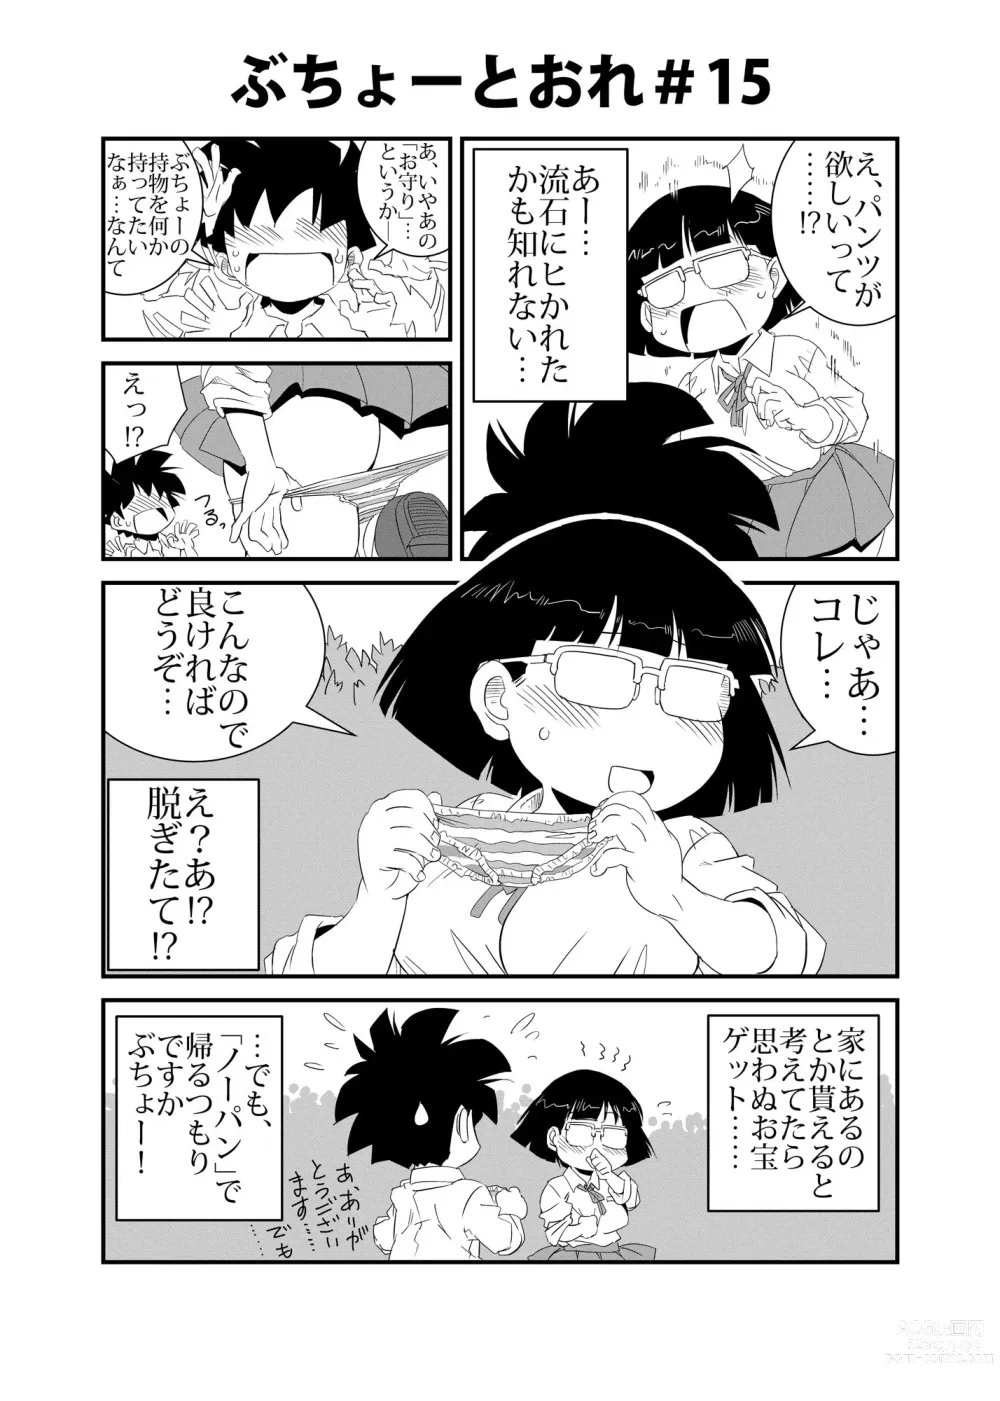 Page 15 of doujinshi Buchou to Ore